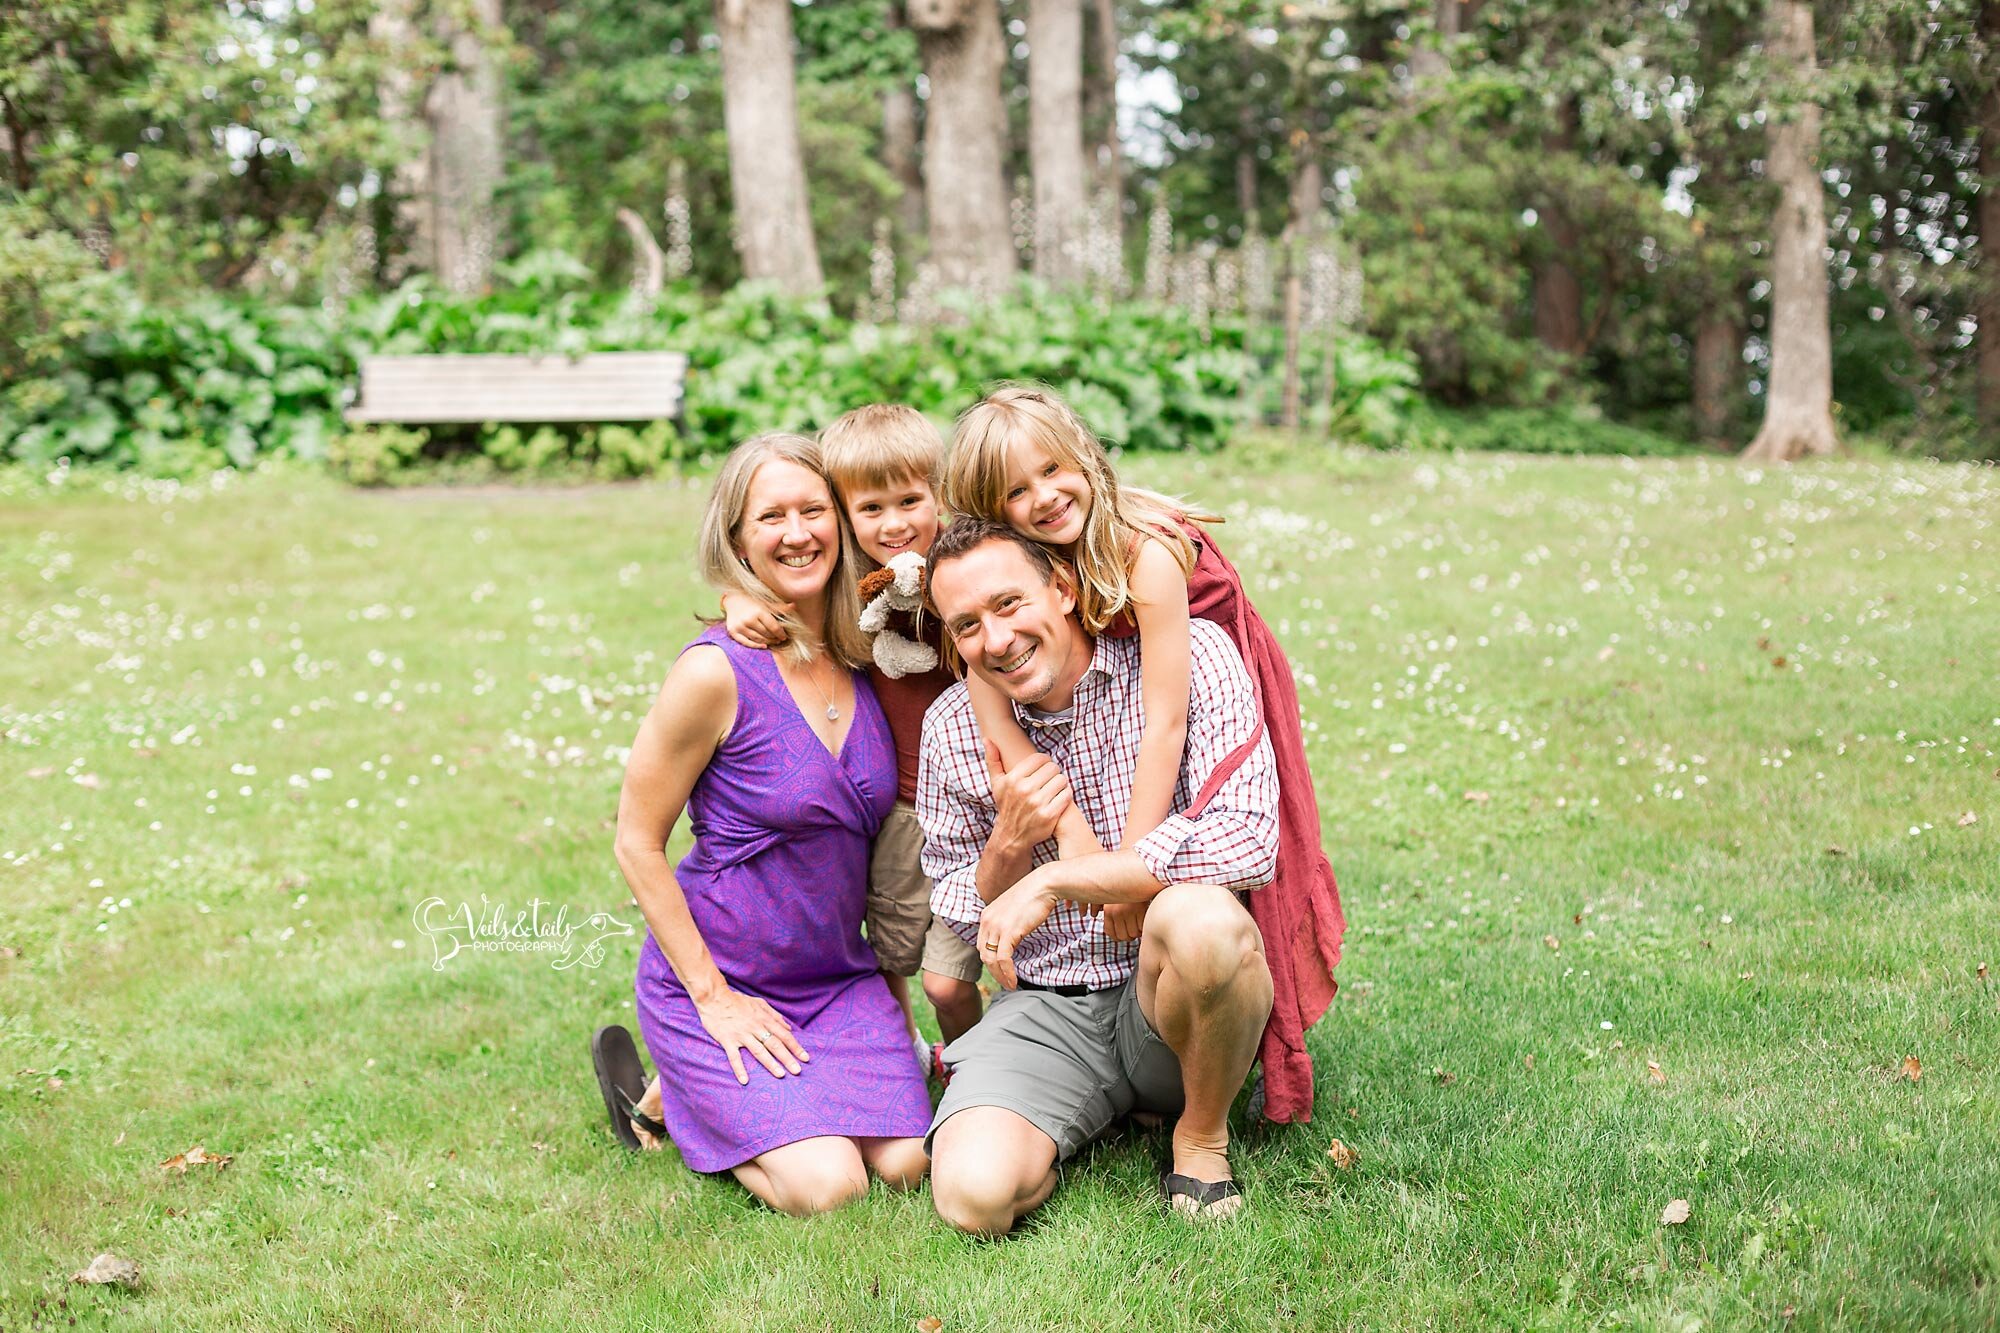 Family Photographer at Hendricks Park, Eugene, Oregon